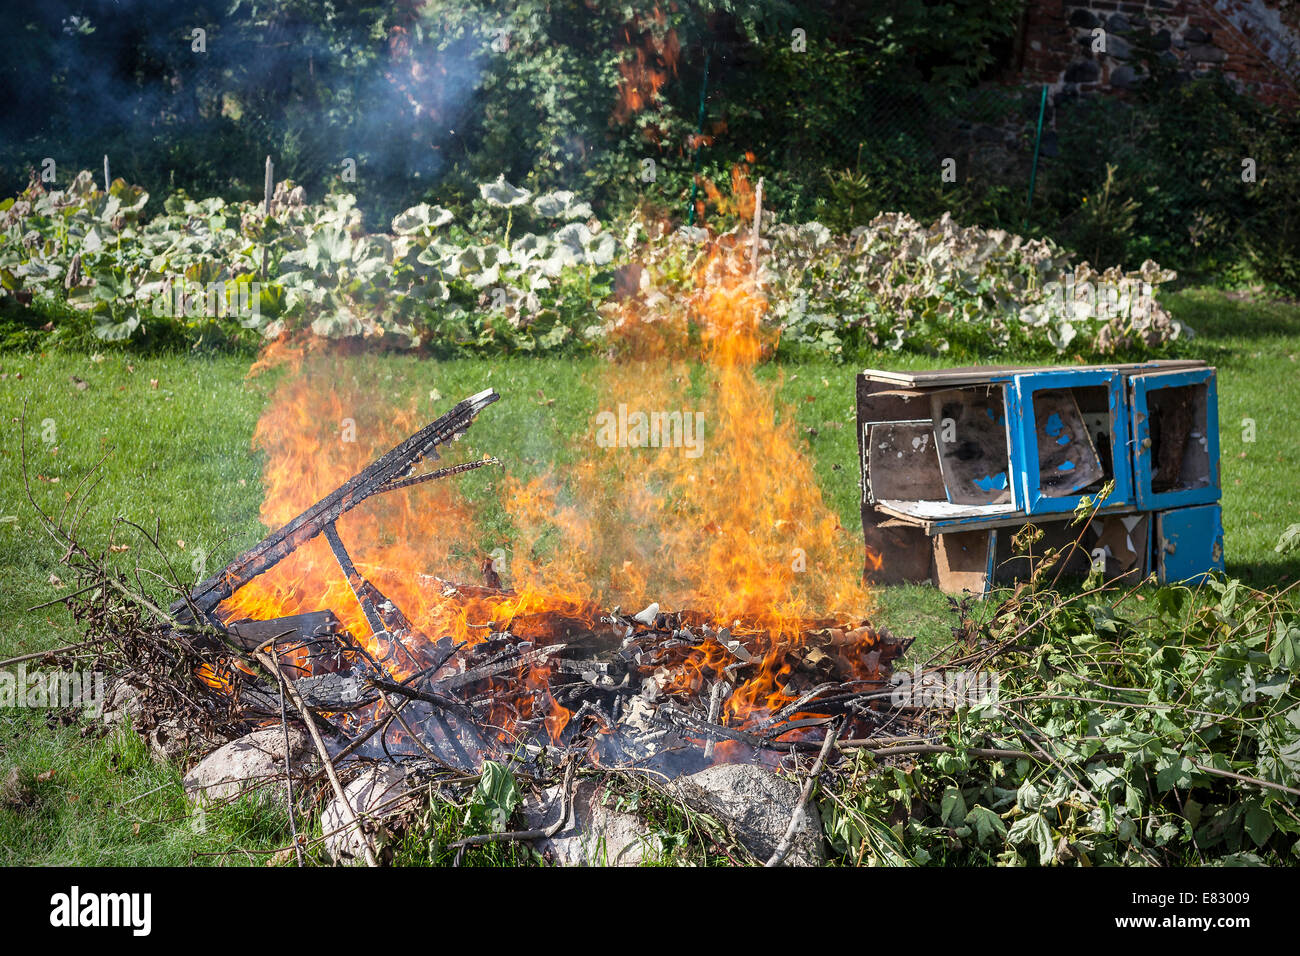 Müll in Brand, Garten Illegal brennen verweigern. Stockfoto